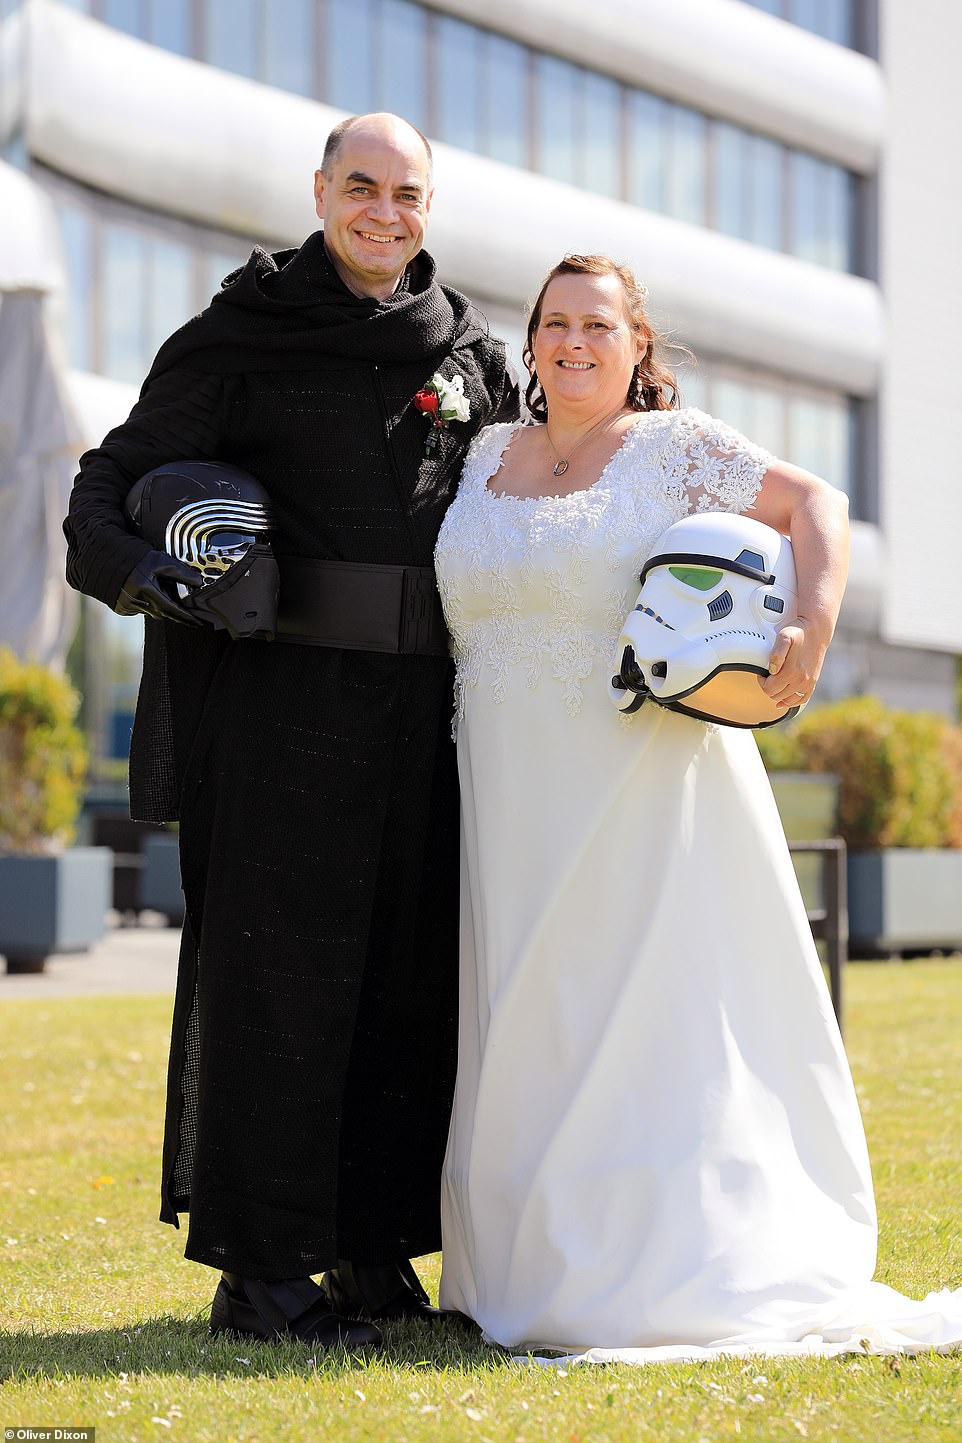 زوجان يرتدون ملابس لشخصيات خيالية من سلسلة أفلام حرب النجوم  (1)